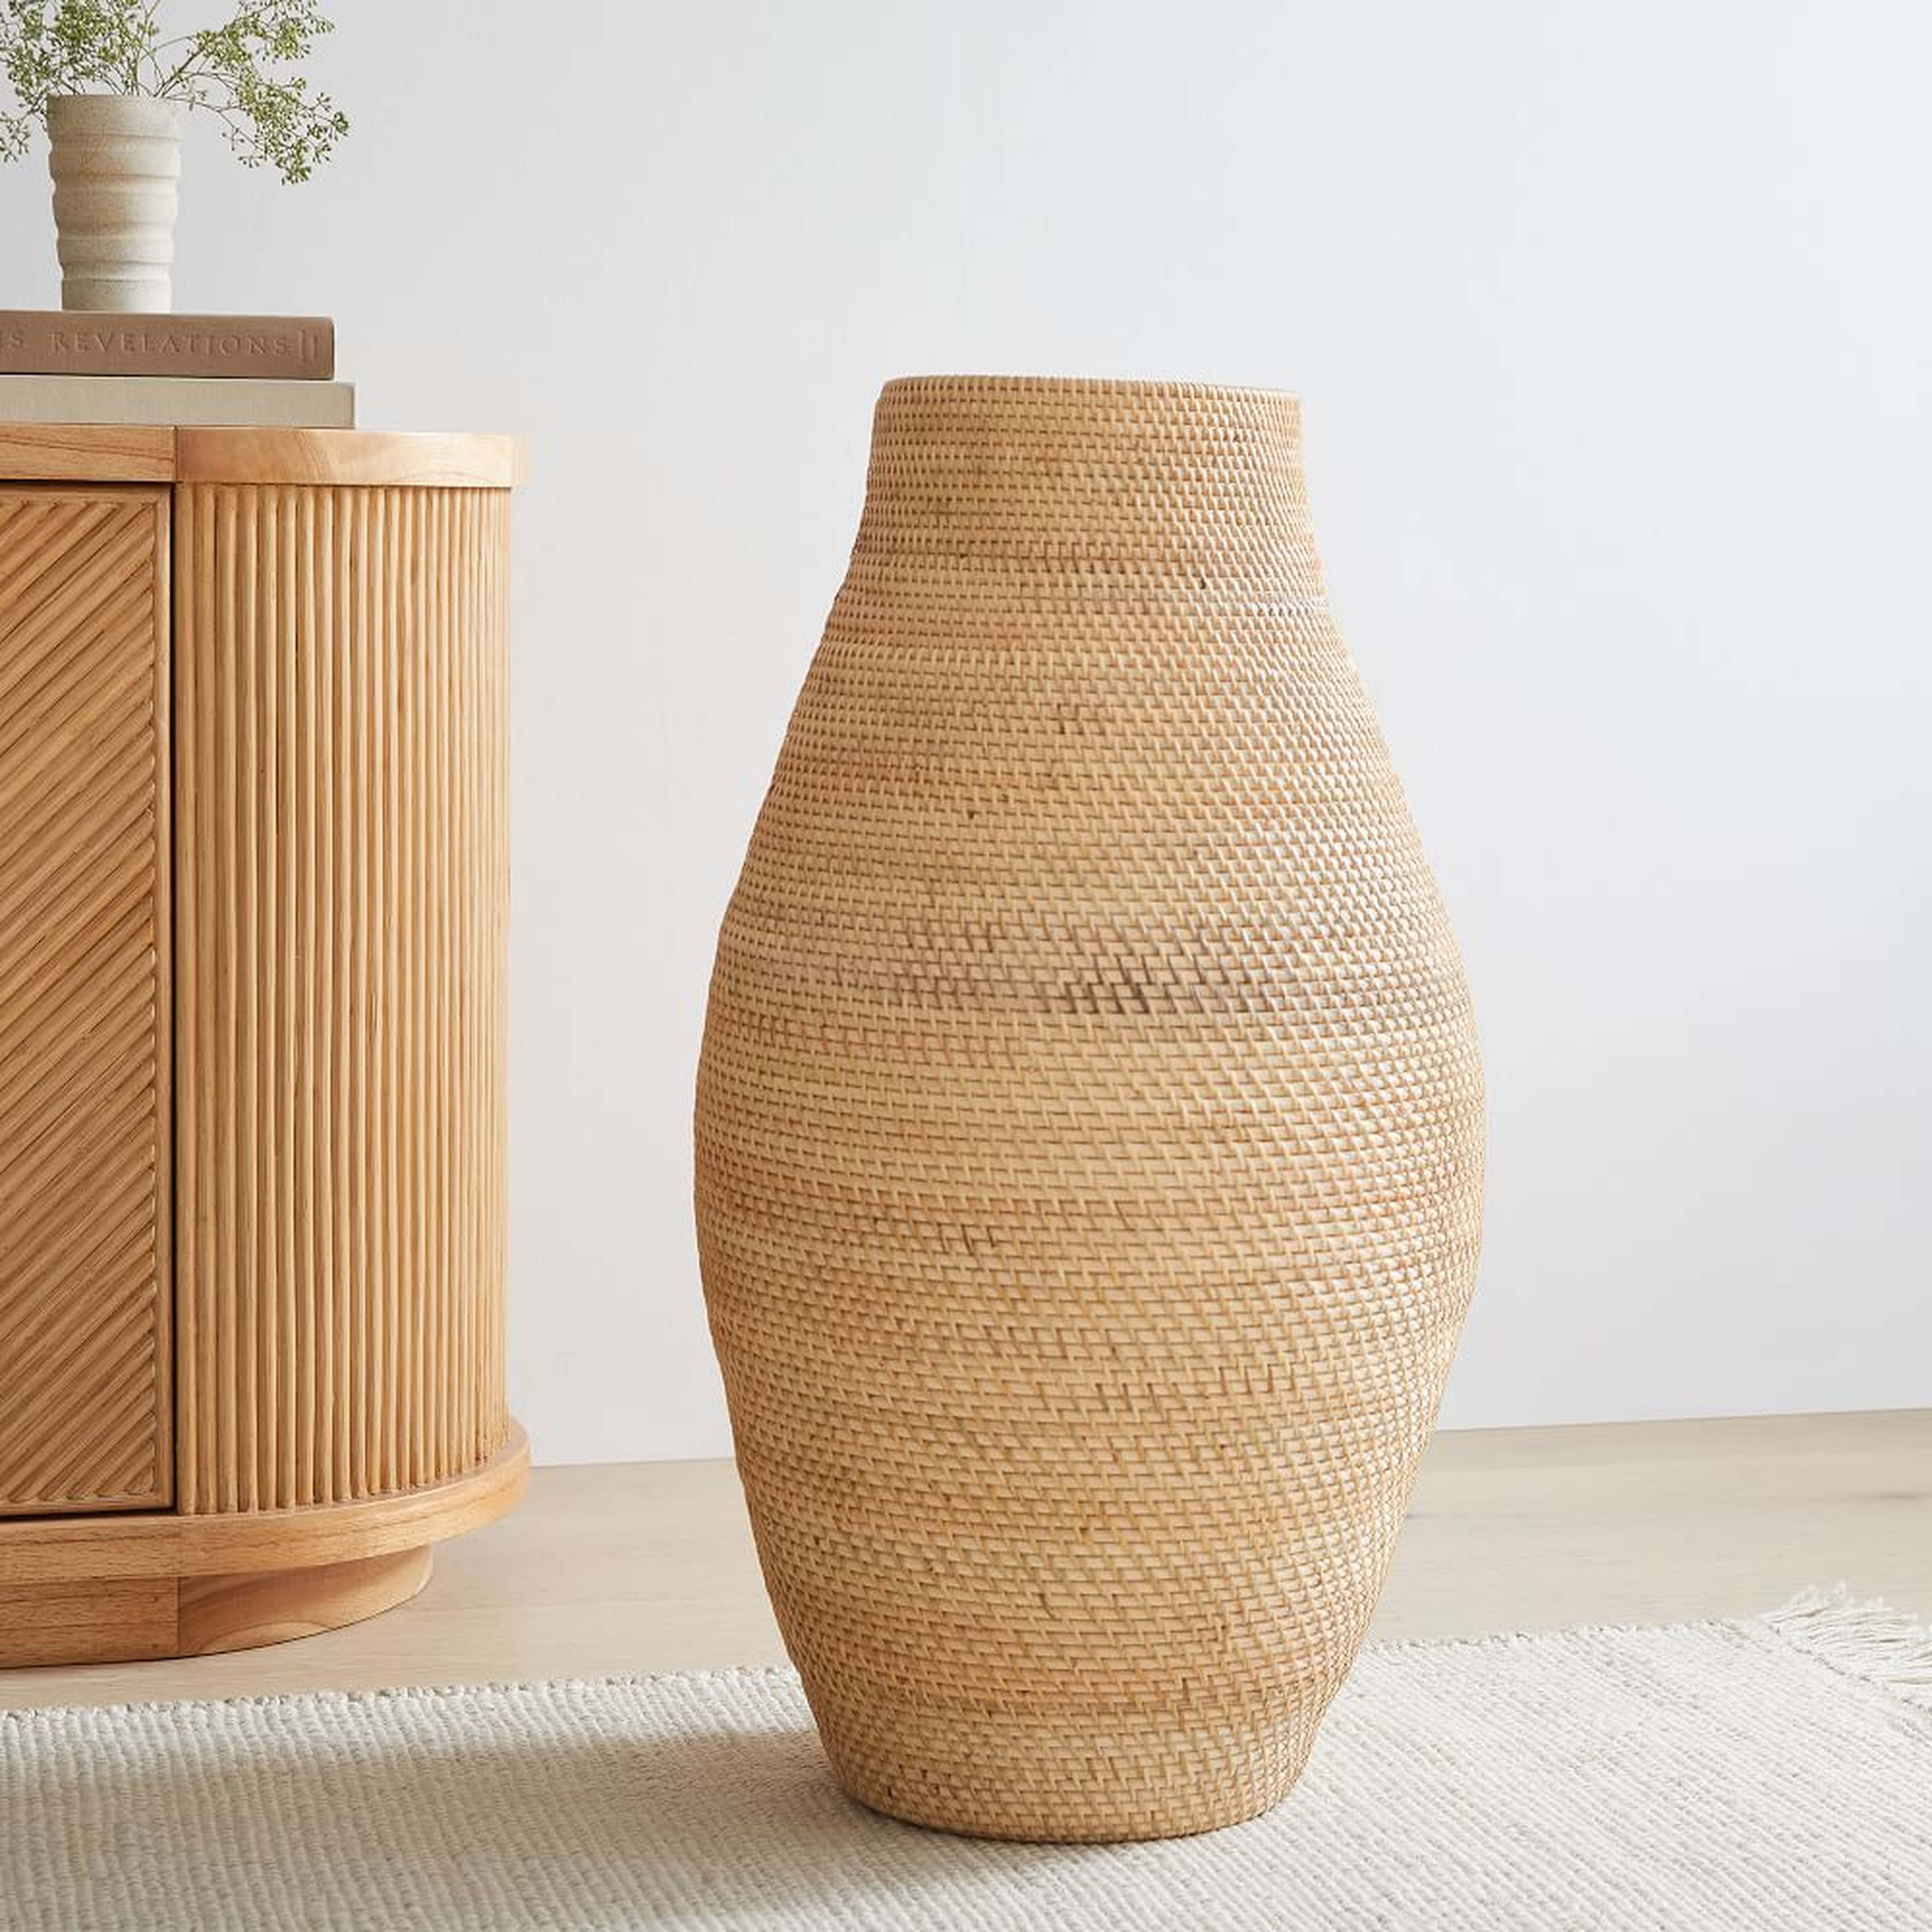 Merida Floor Vases, Medium Vase, Natural, Rattan, 29 Inches - West Elm